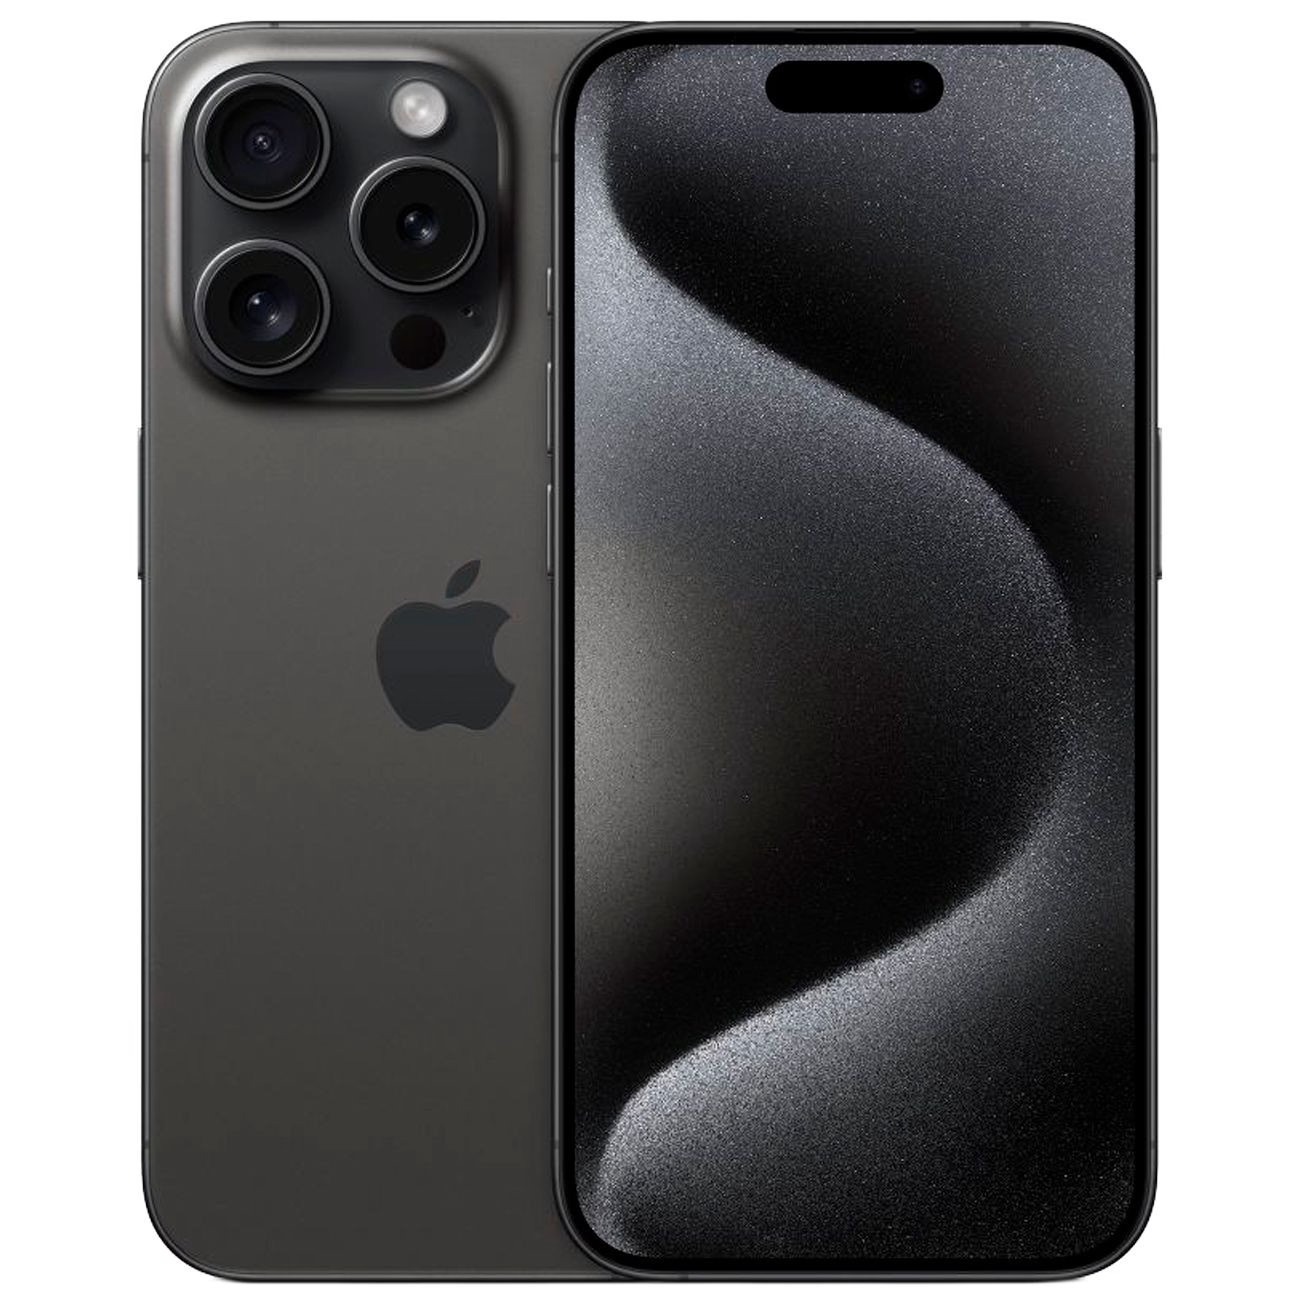 Купить смартфон apple iphone 15 pro max 512gb black titanium Apple iPhone 15 Pro Max в официальном магазине Apple, Samsung, Xiaomi. iPixel.ru Купить, заказ, кредит, рассрочка, отзывы,  характеристики, цена,  фотографии, в подарок.